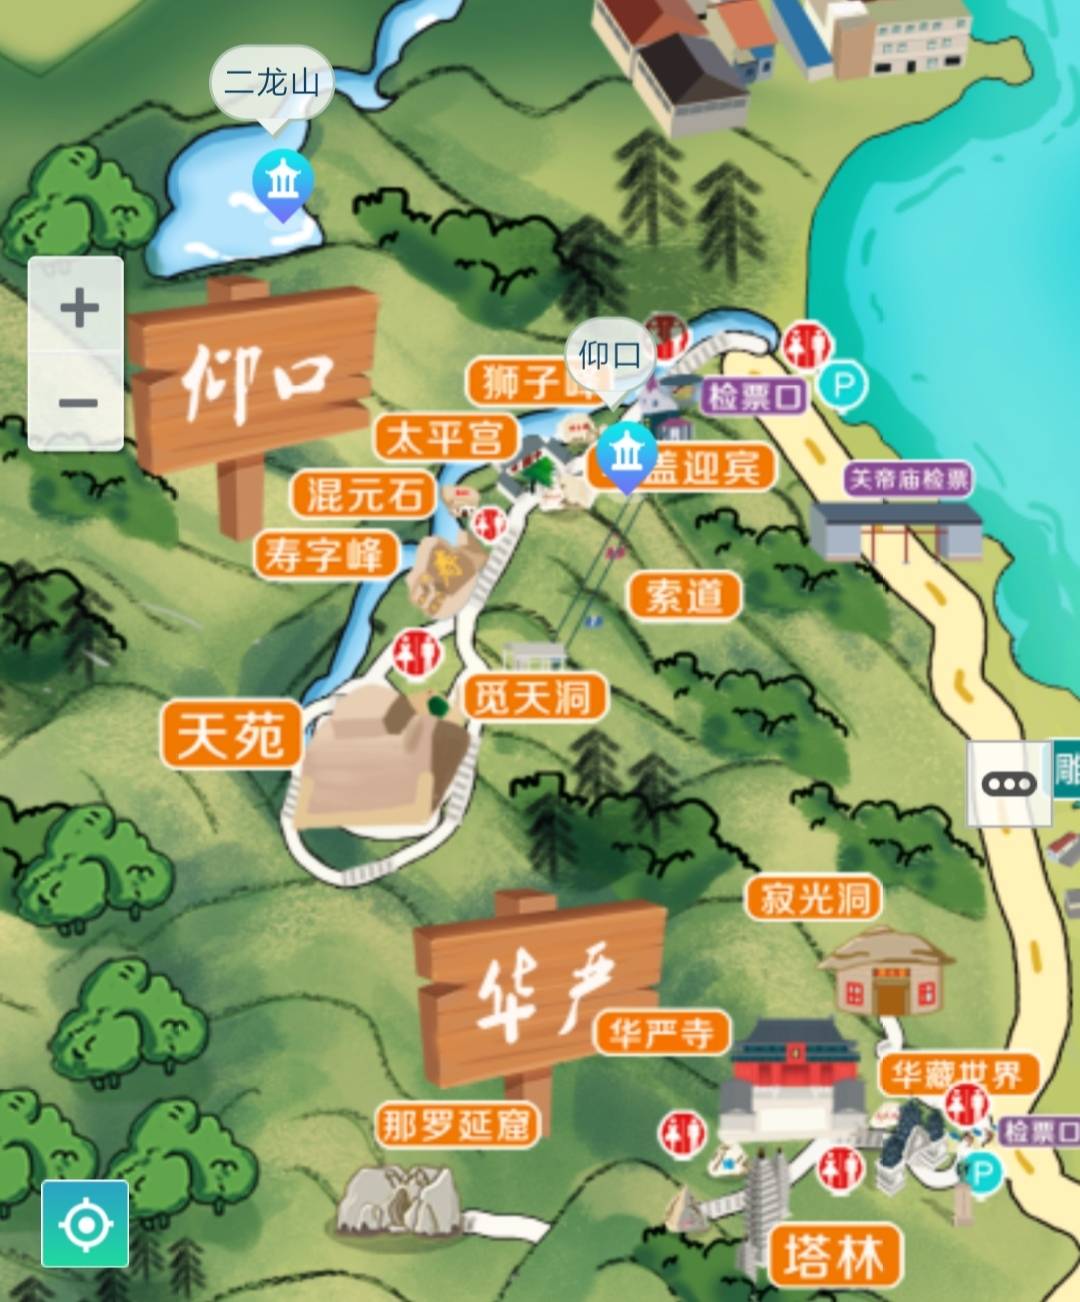 青岛旅游行李寄存攻略青岛地铁景点地图门票及青岛美食